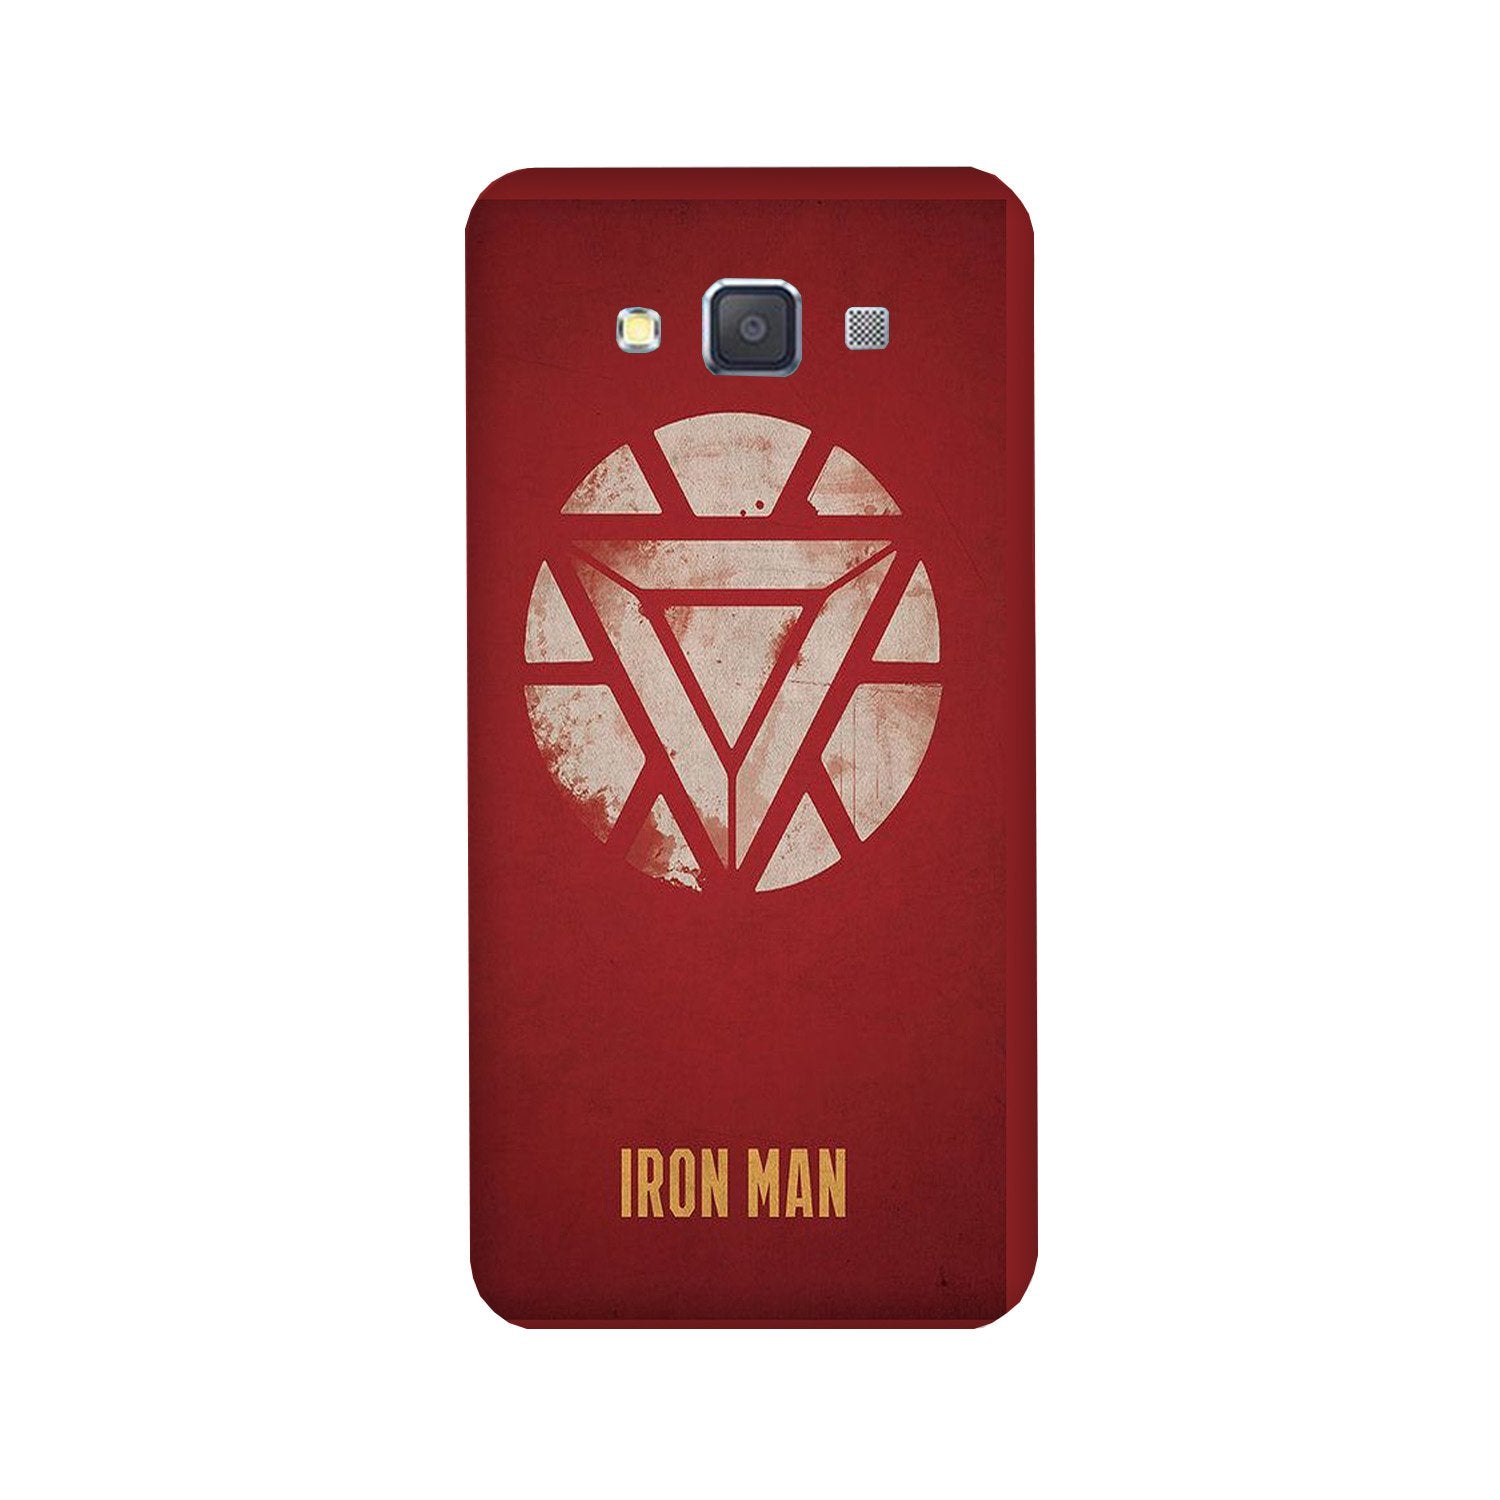 Iron Man Superhero Case for Galaxy Grand 2(Design - 115)